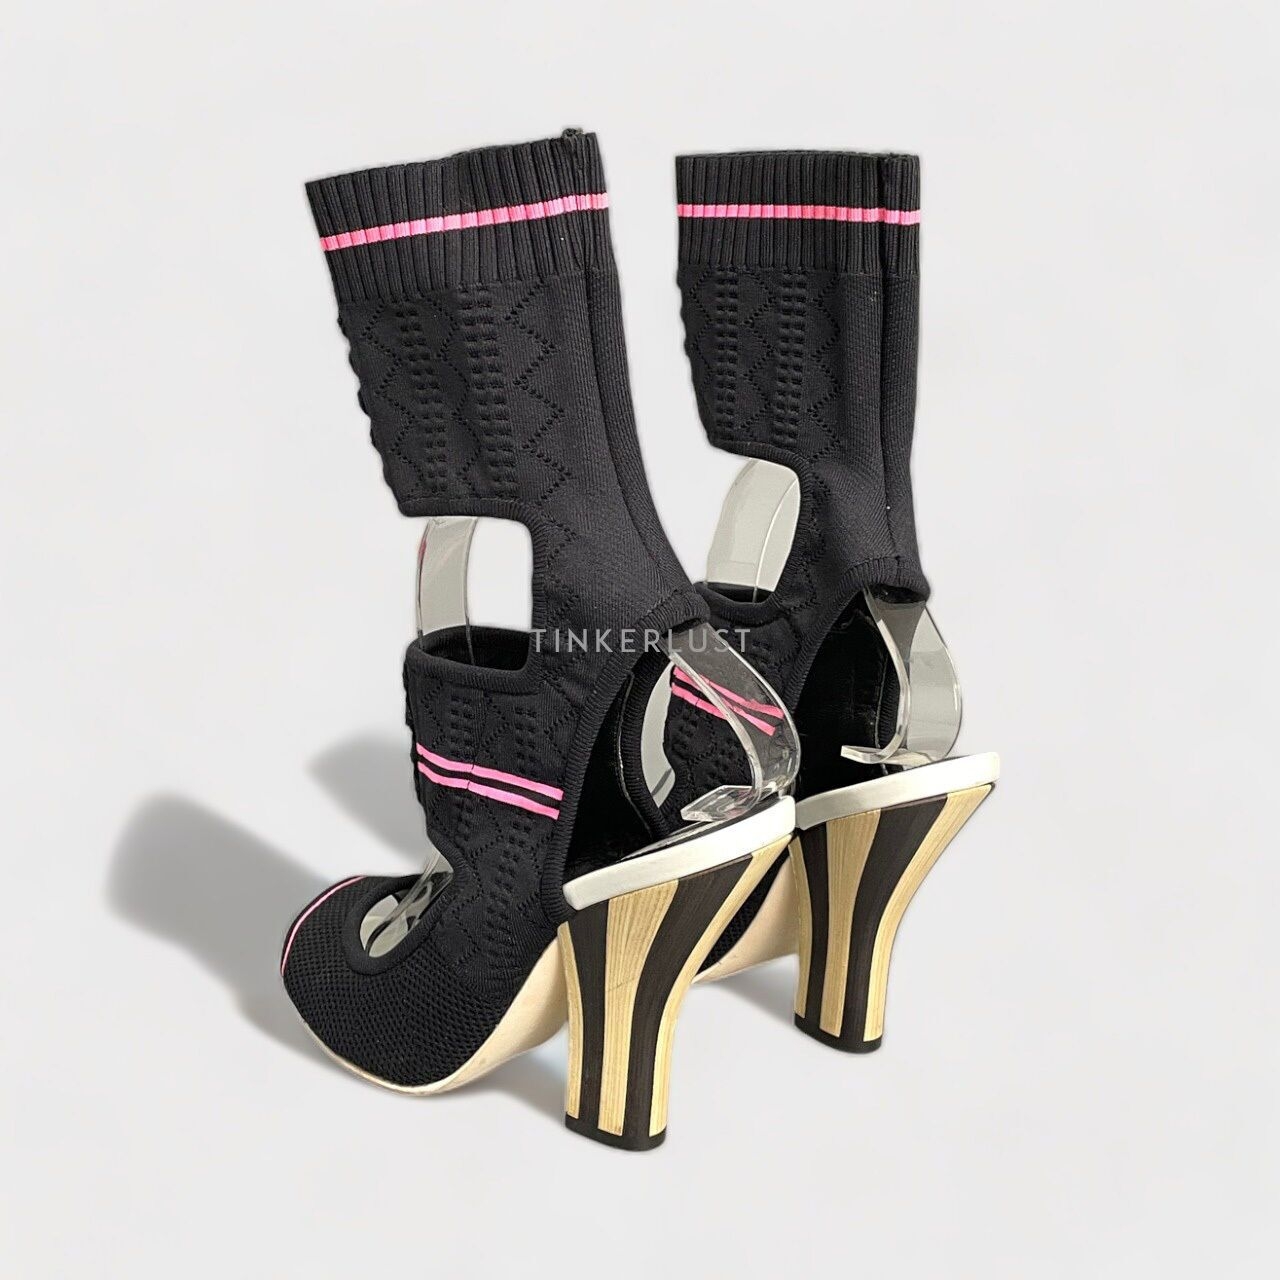 Fendi Knit Rockoko Peep Toe Cut Out Openwork Sock Black Heels